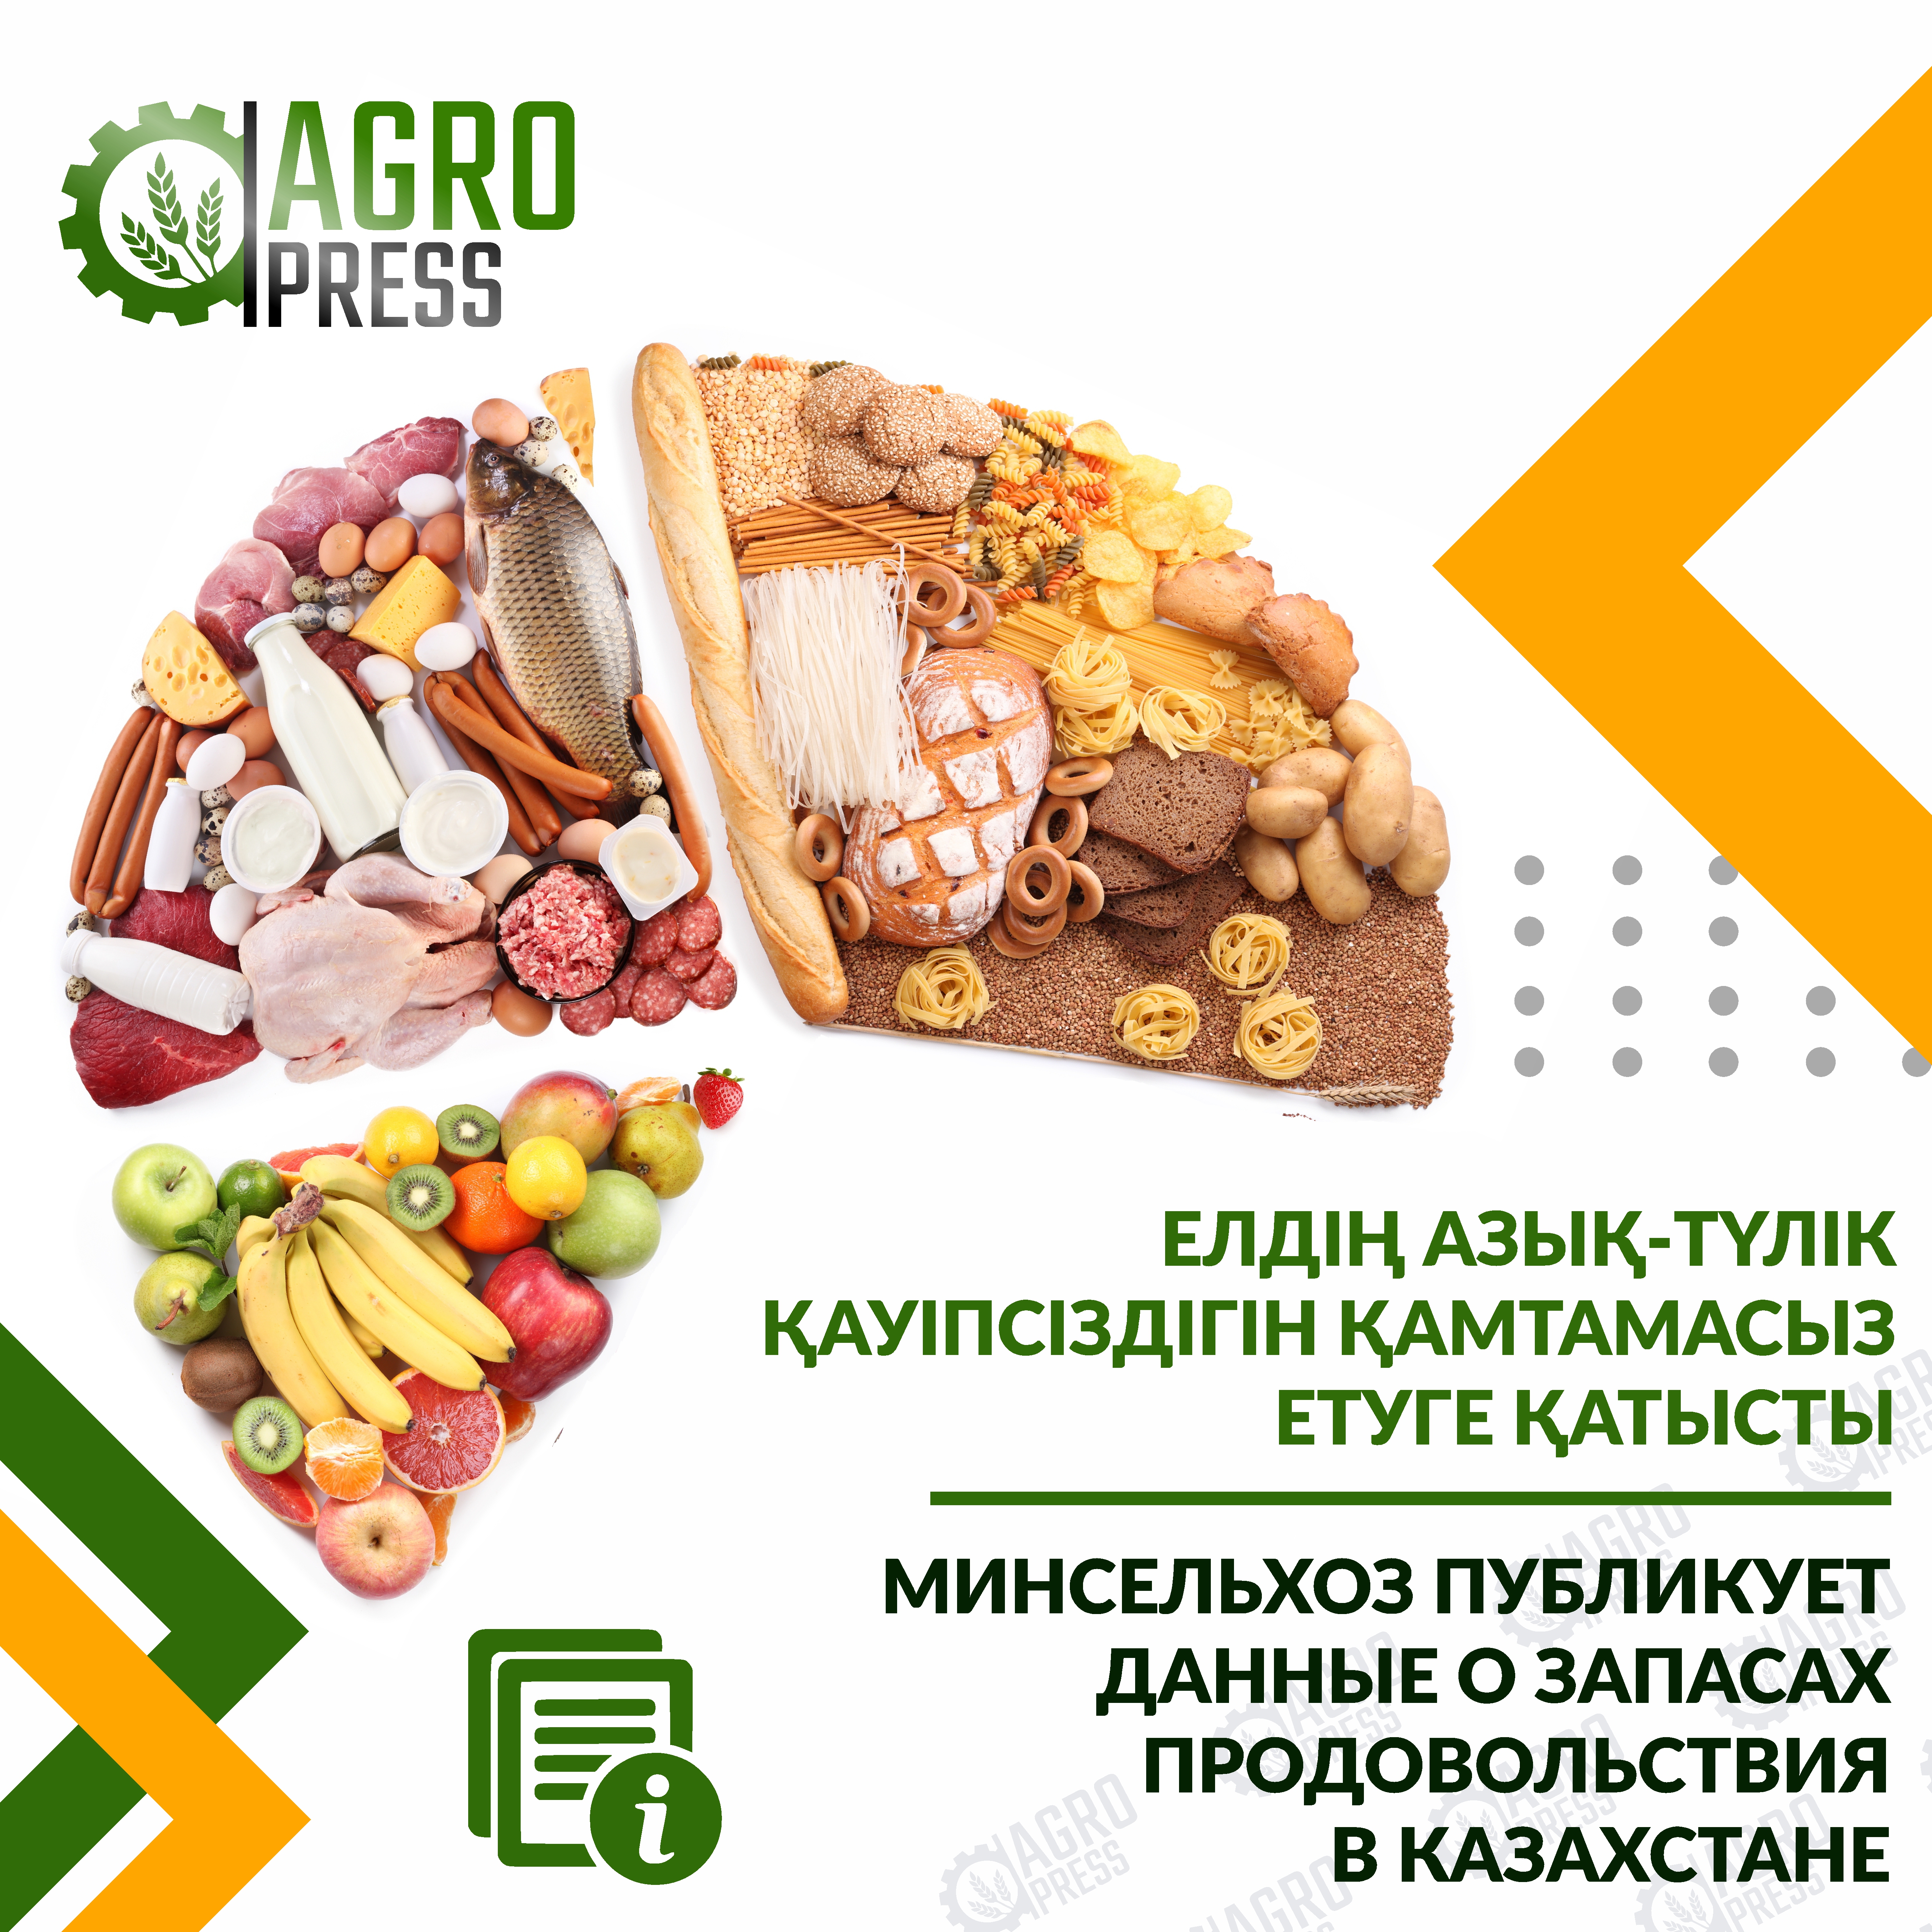 Минсельхоз публикует данные о запасах продовольствия в Казахстане